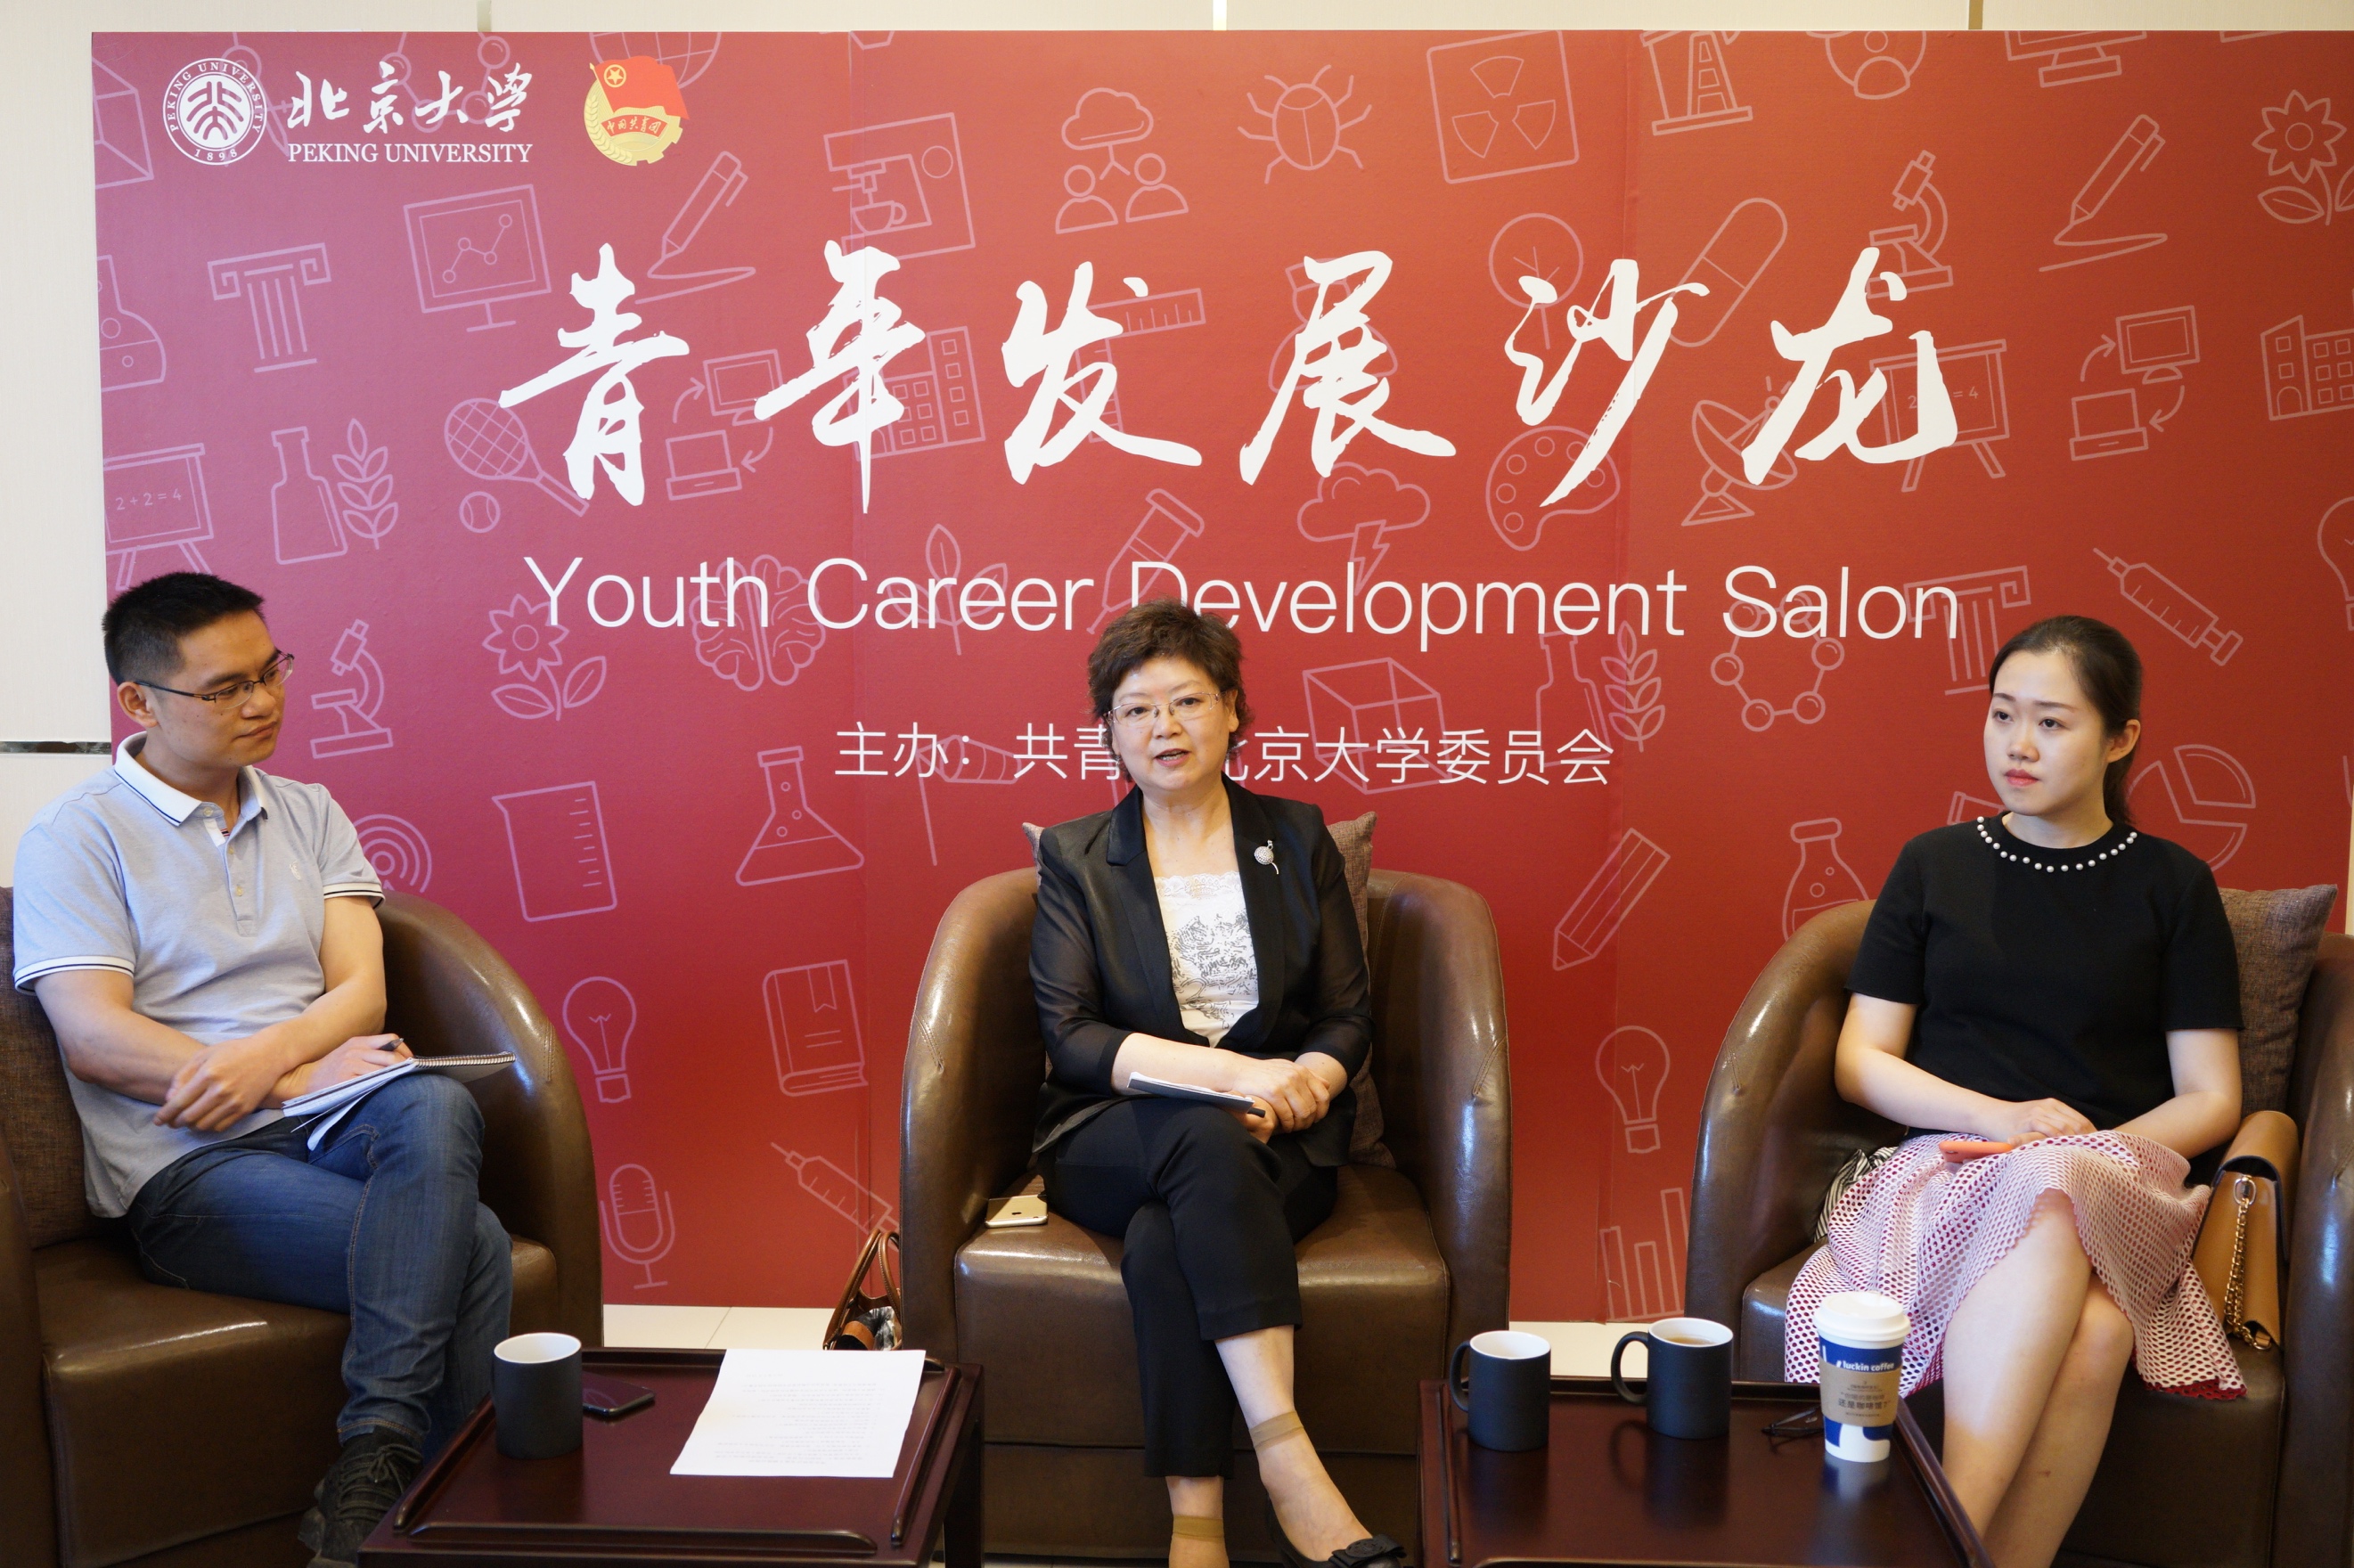 继承新闻道义 挺起时代脊梁——北京大学青年发展沙龙第八期举行